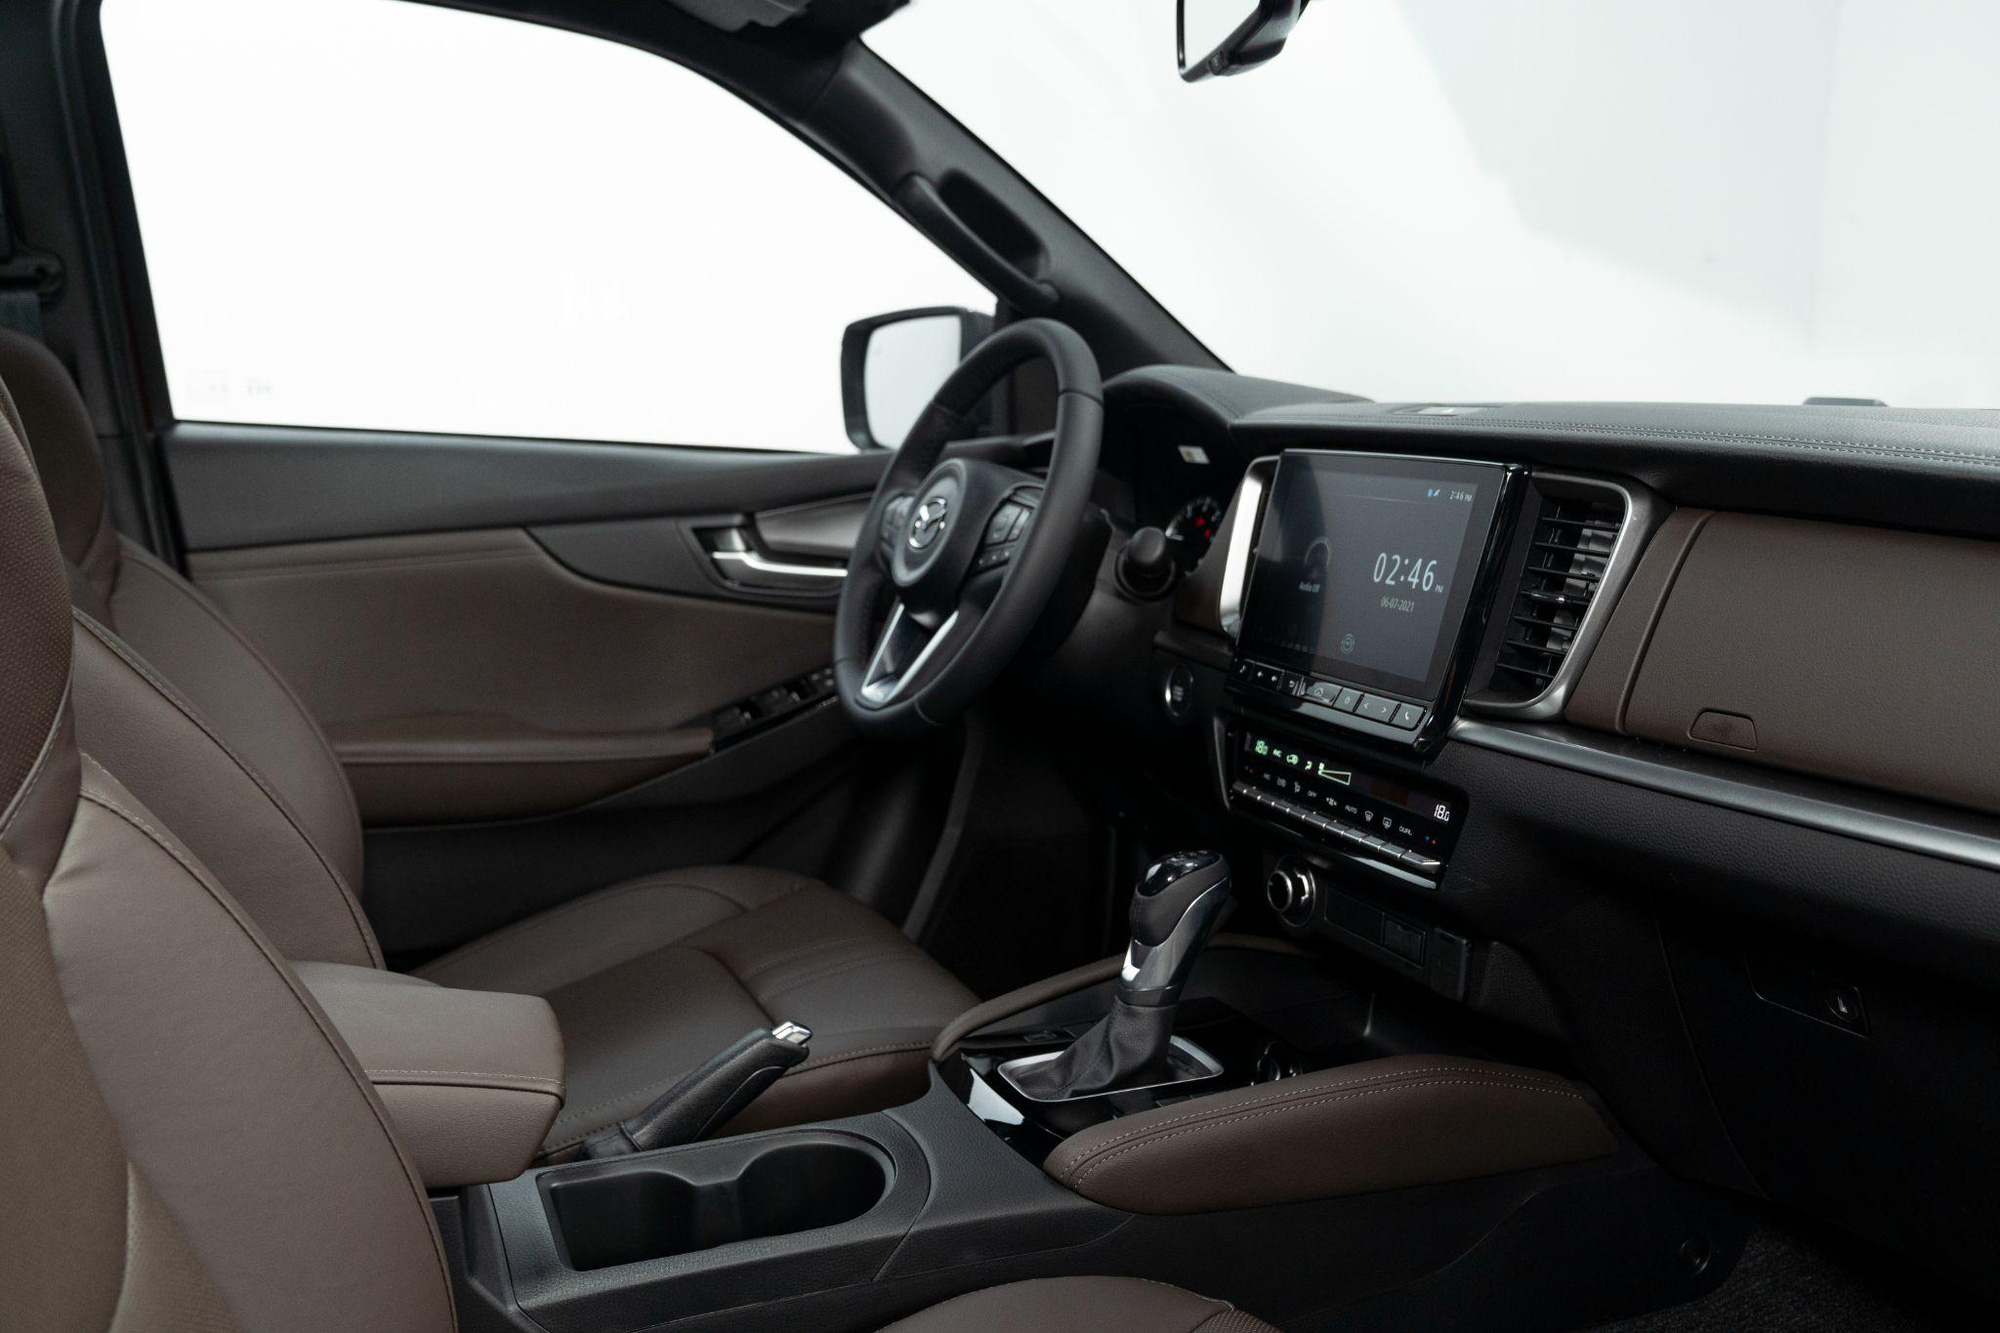 Mazda BT-50 2021 mang luồng gió mới cho phân khúc bán tải đô thị với tiện nghi như SUV cao cấp - Ảnh 7.